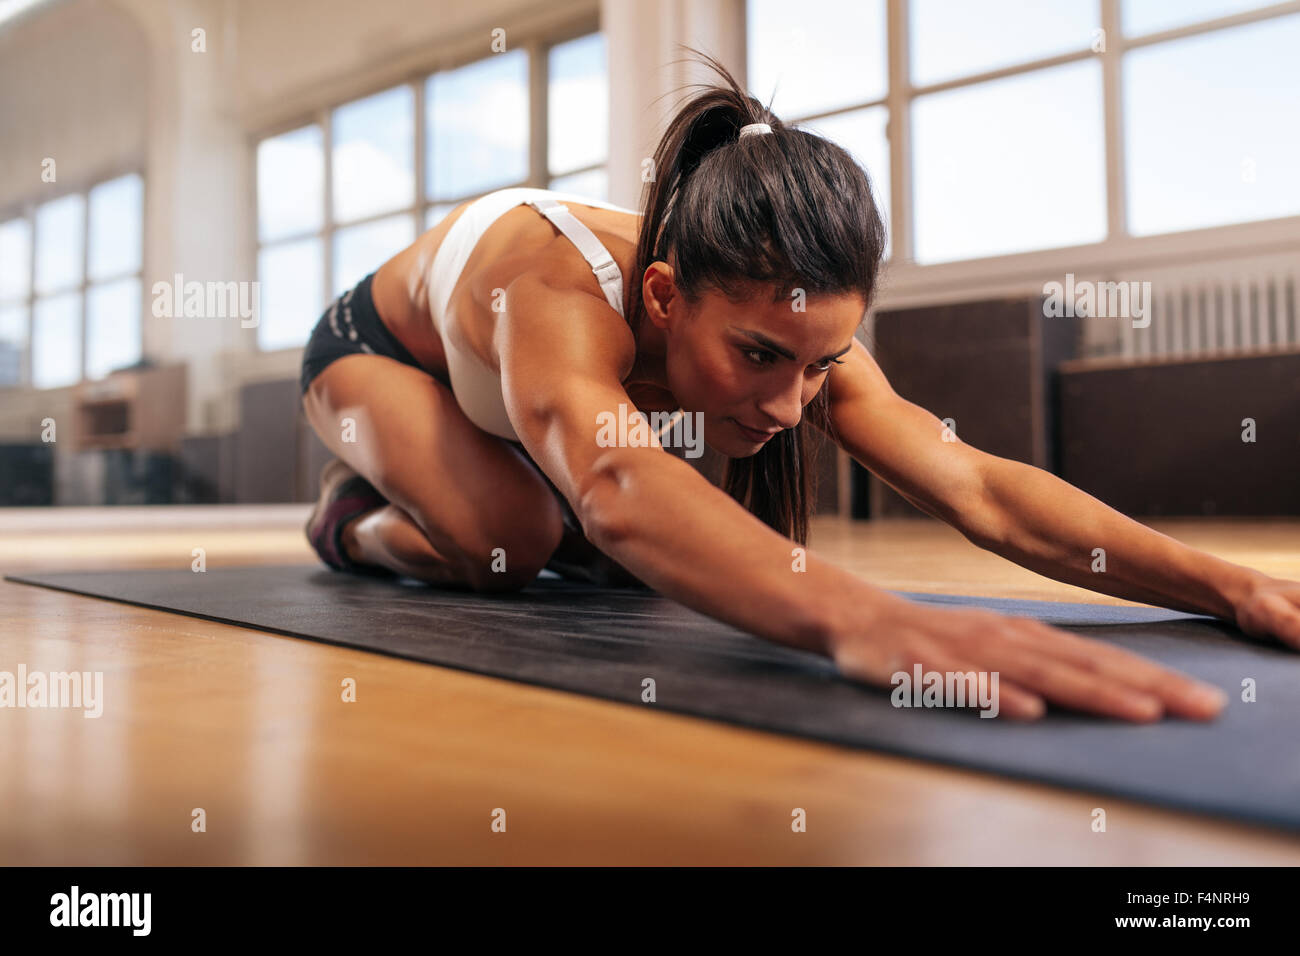 Junge muskulöse Frau tut stretching Workout im Fitness-Matte. Frauen Yoga im Fitness-Studio durchführen. Stockfoto